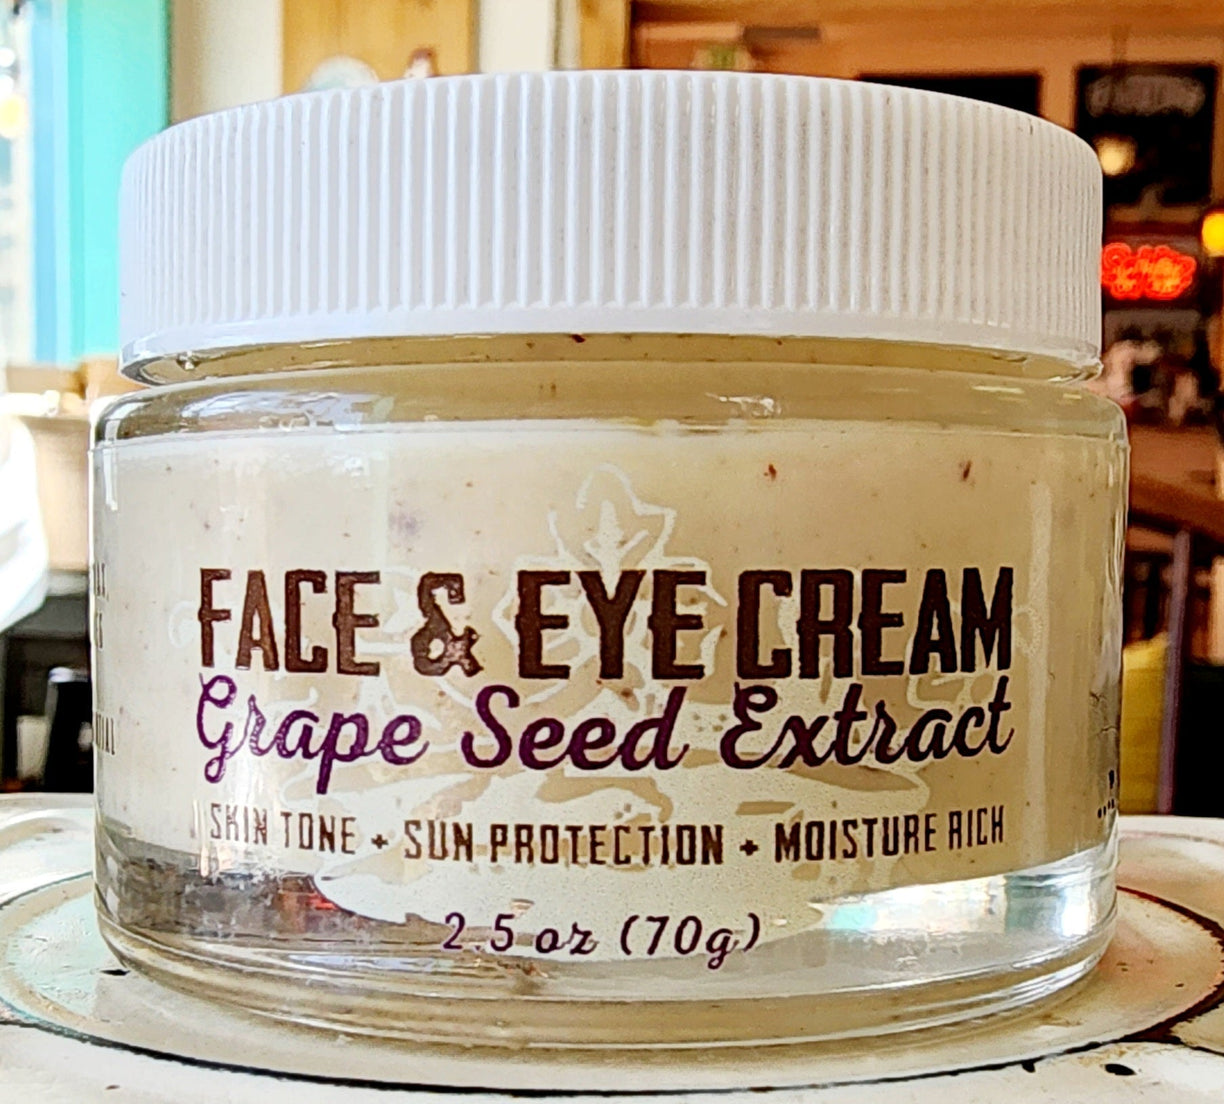 Face & Eye Cream Grape Seed Extract - nakedgoatfarm